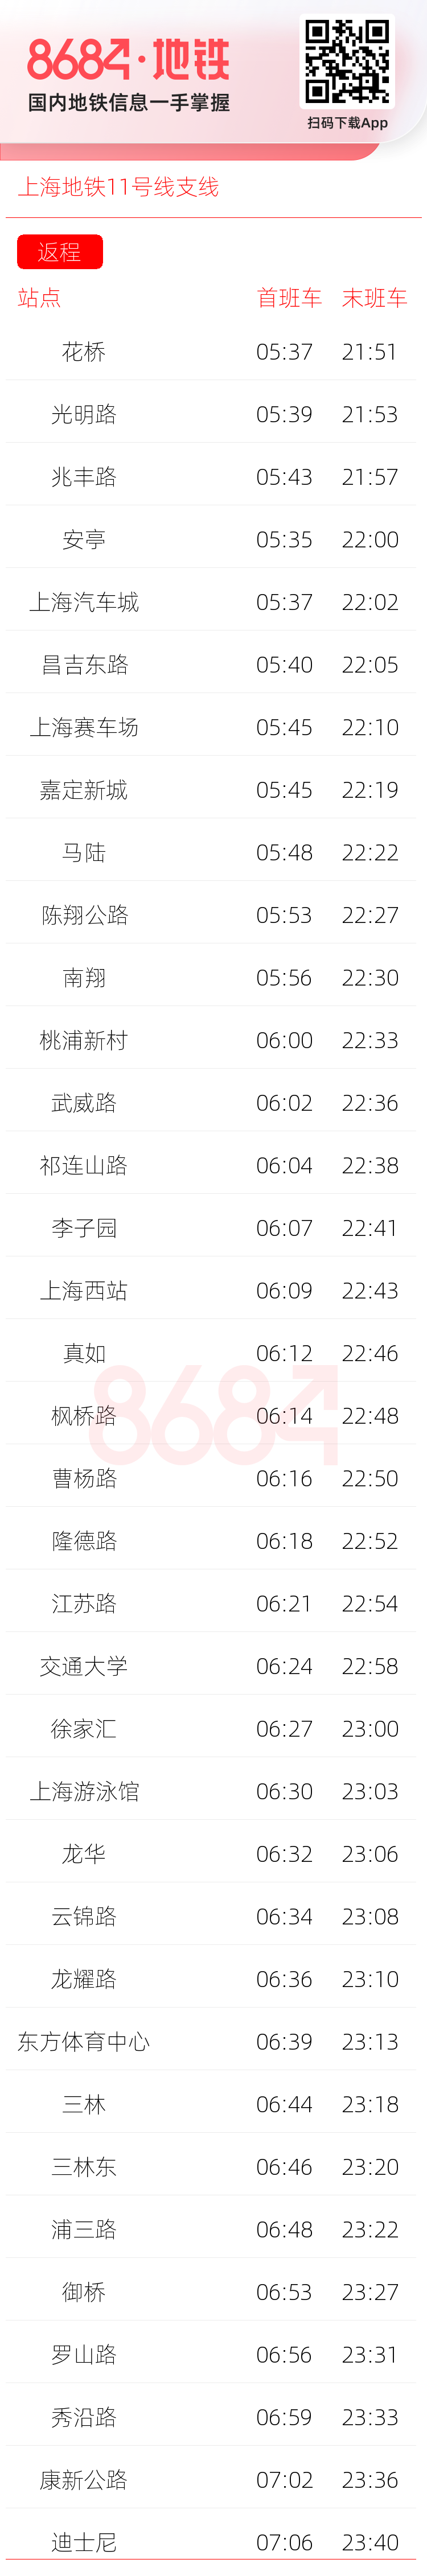 上海地铁11号线支线运营时间表